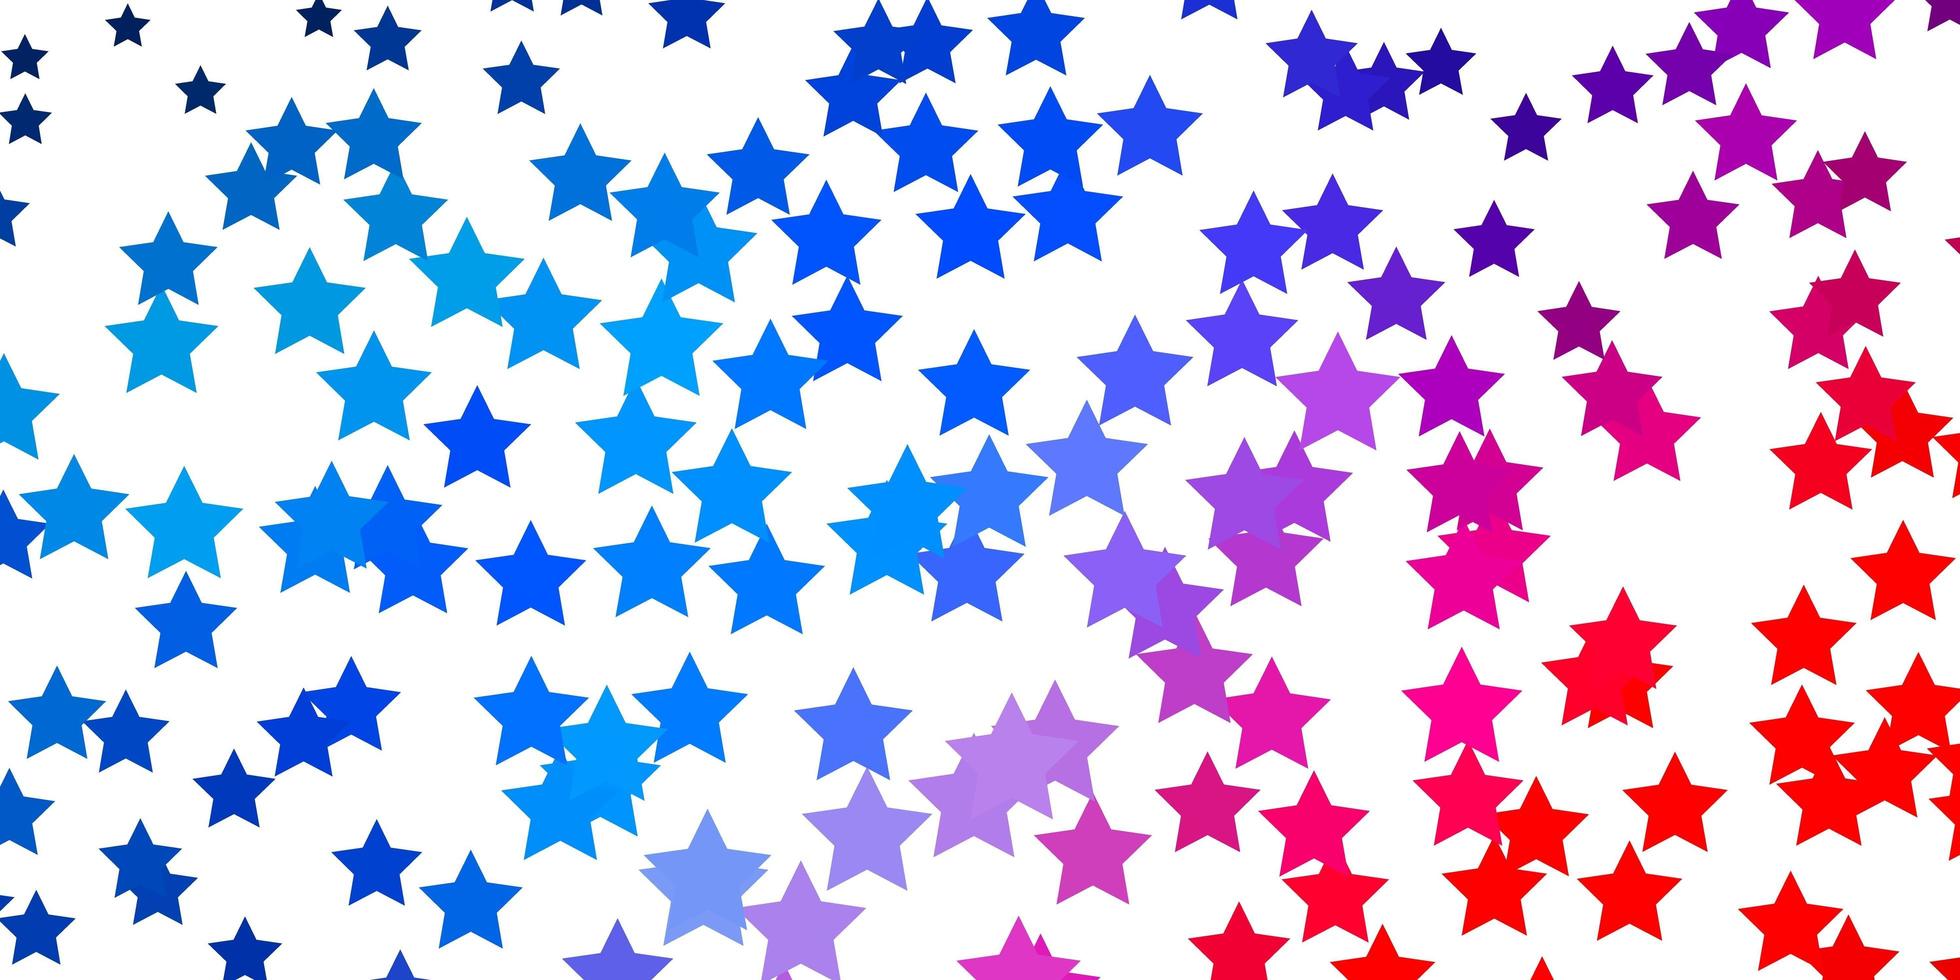 layout de vetor azul claro vermelho com estrelas brilhantes ilustração colorida com tema de estrelas pequenas e grandes para telefones celulares